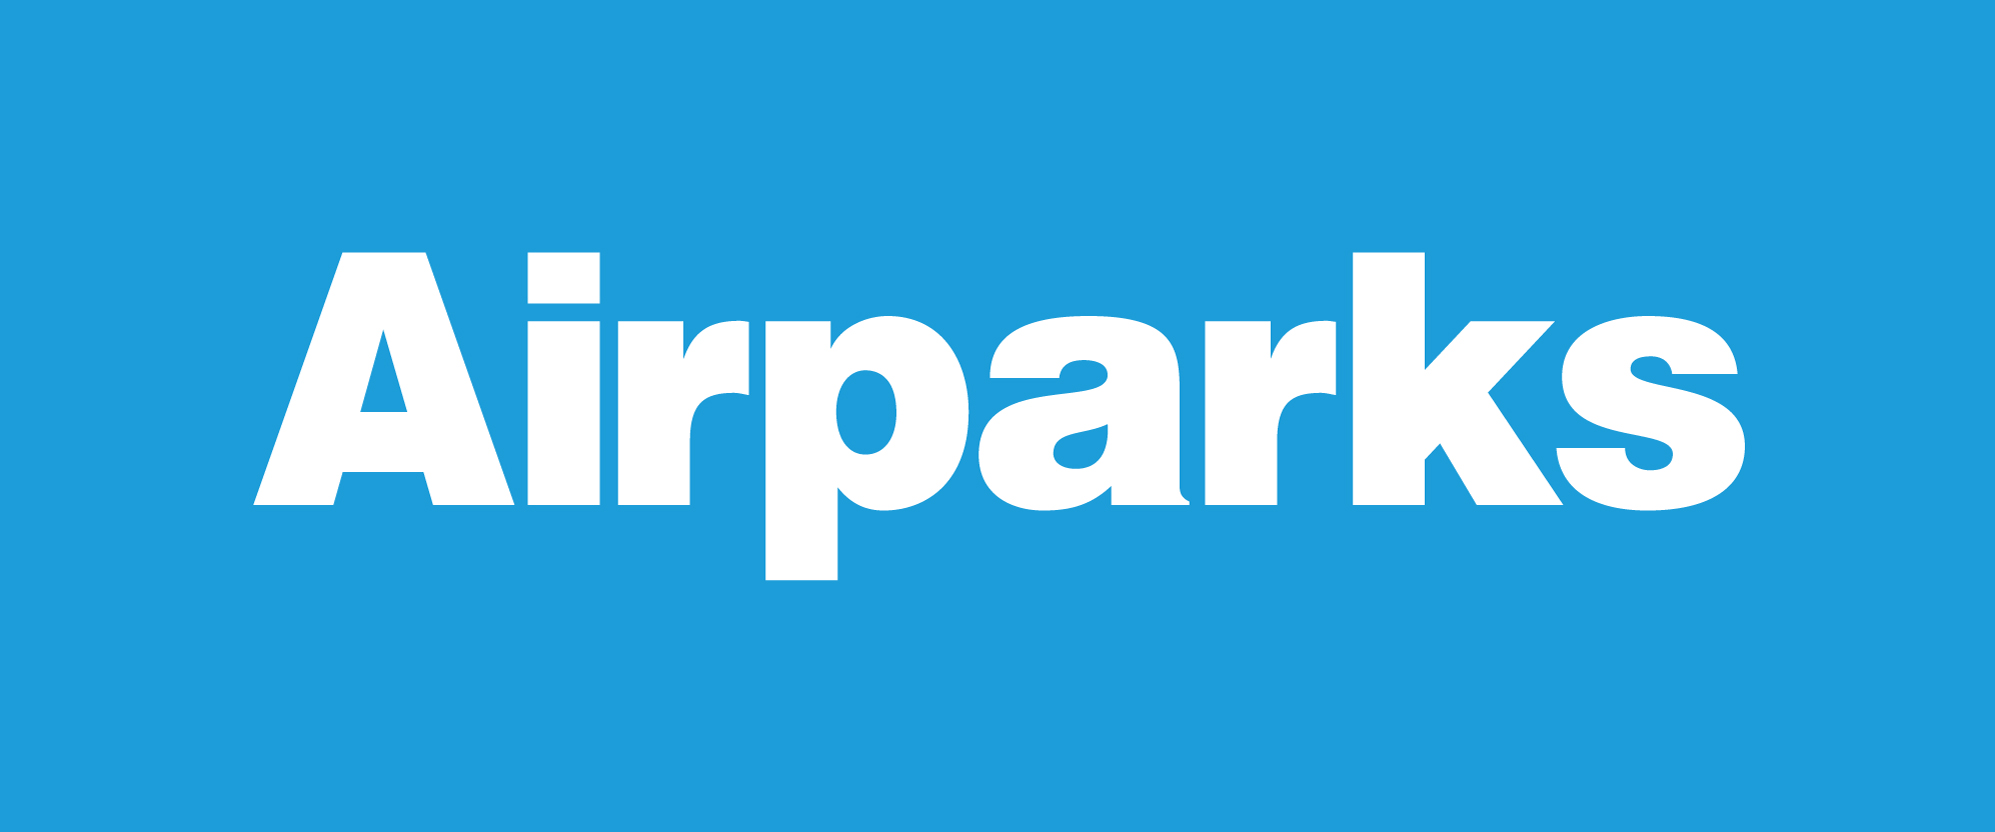  Airparks Parkhaus Flughafen München, vormals Parkvogel Parkhaus München